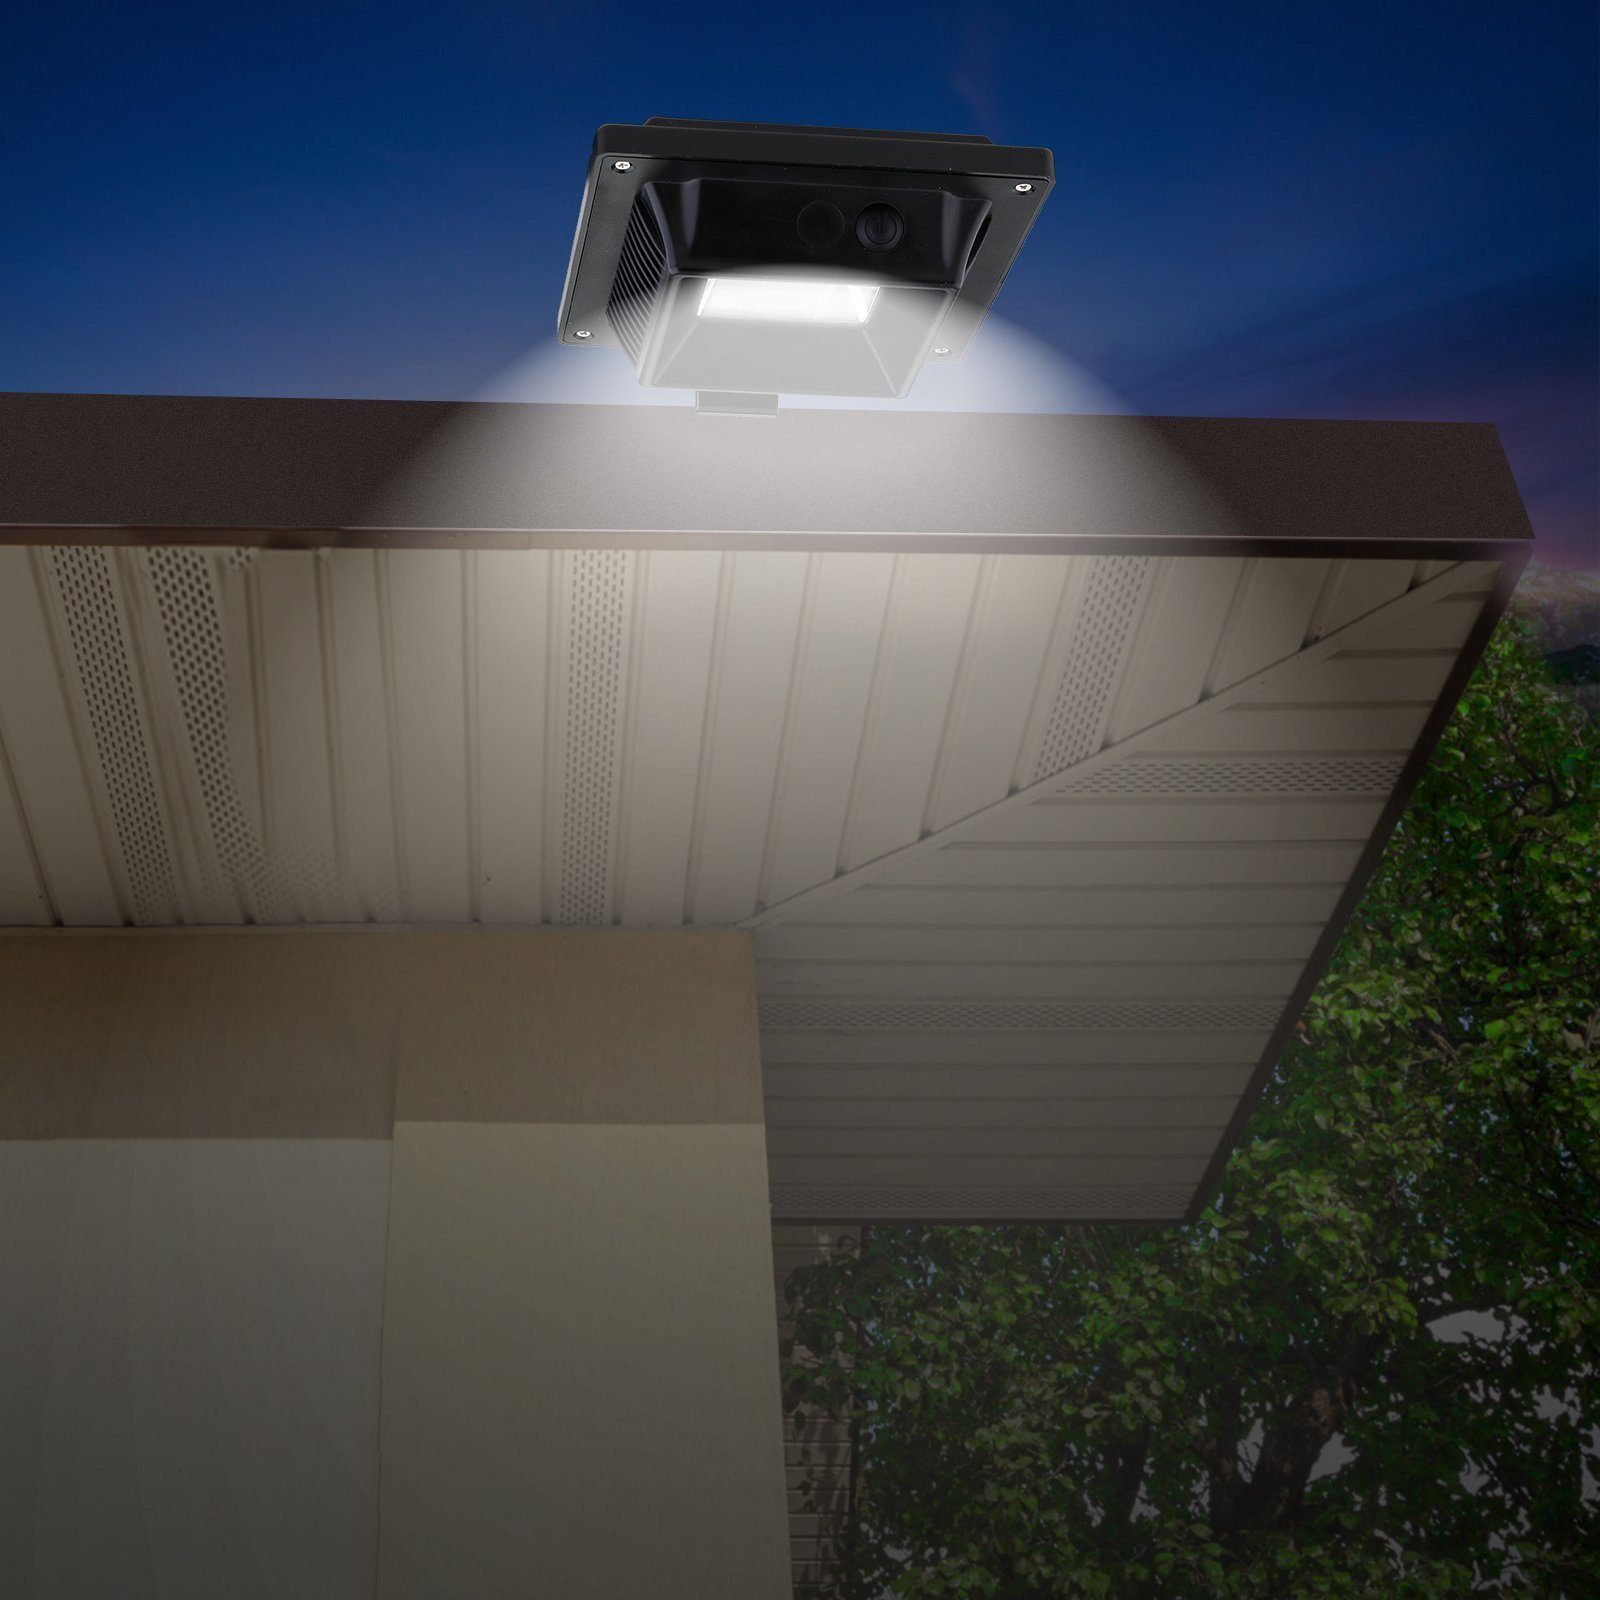 4Stk.40LED Außen Solarlampen LED Home für Dachrinnenleuchte safety